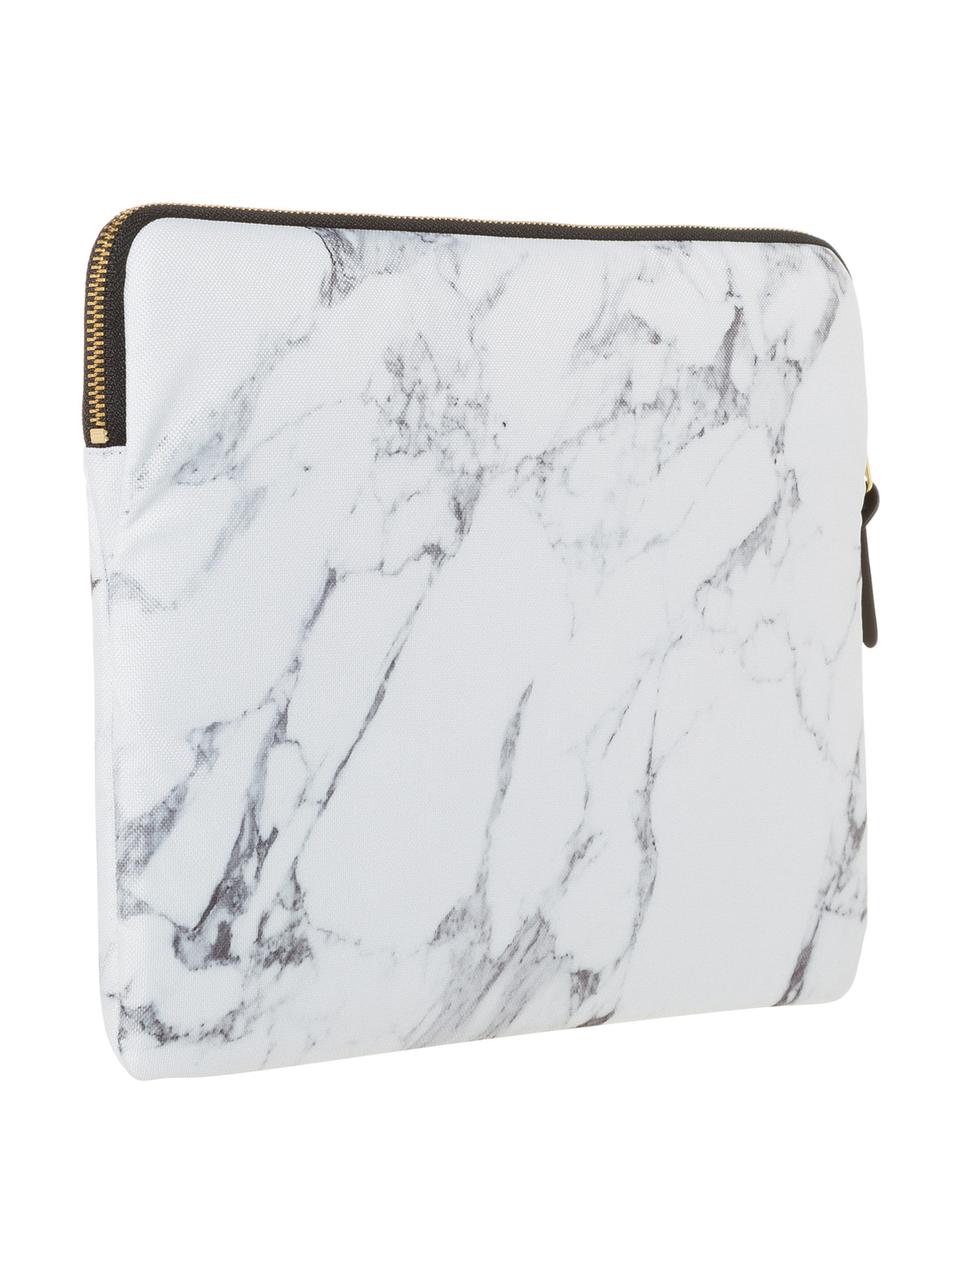 Laptophülle White Marble für MacBook Pro 13 Zoll, Laptoptasche: Weiß, marmoriert Aufdruck: Schwarz mit goldfarbener Schrift, 34 x 25 cm